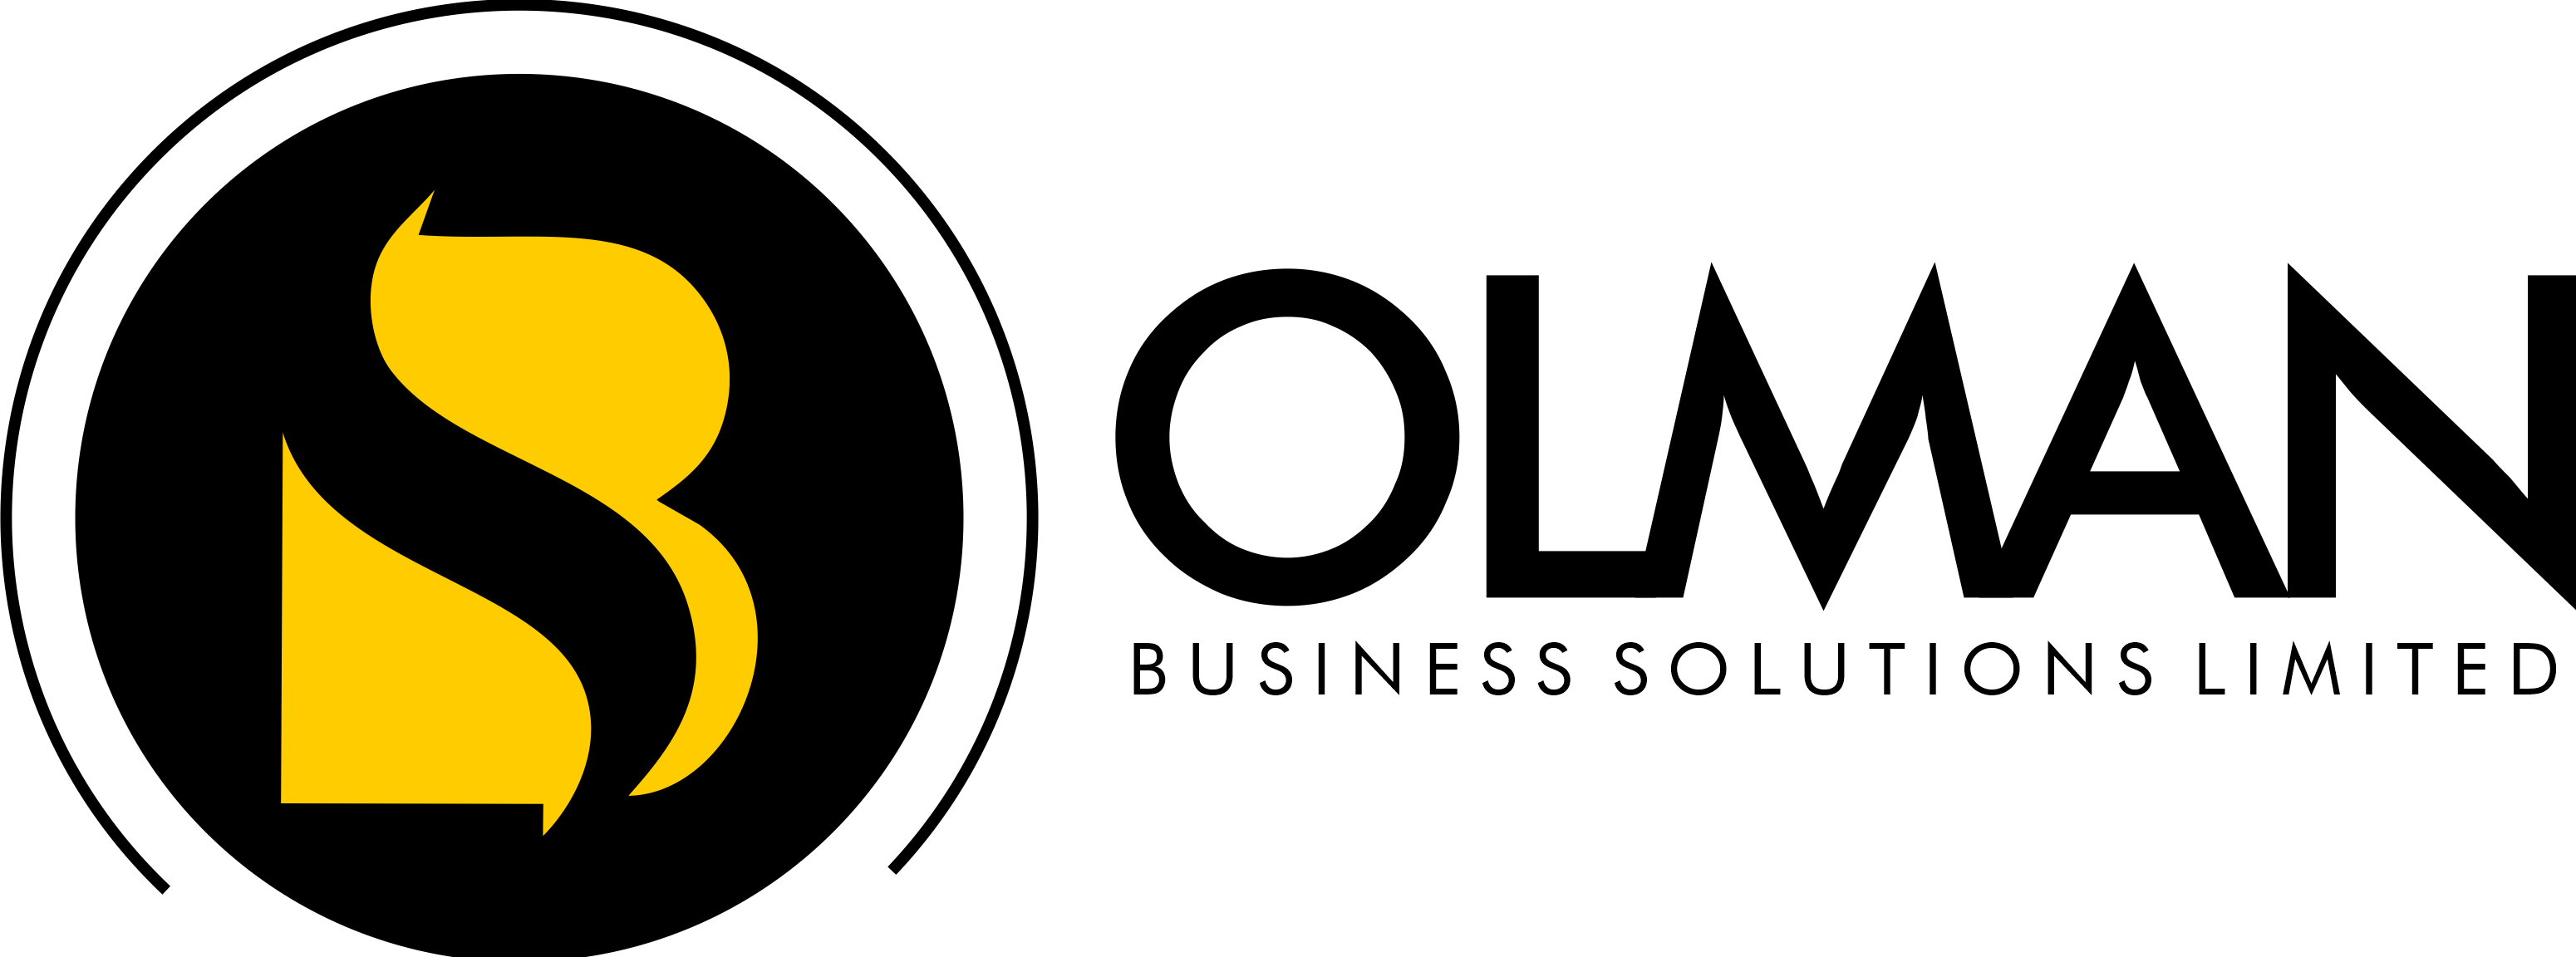 olman white logo